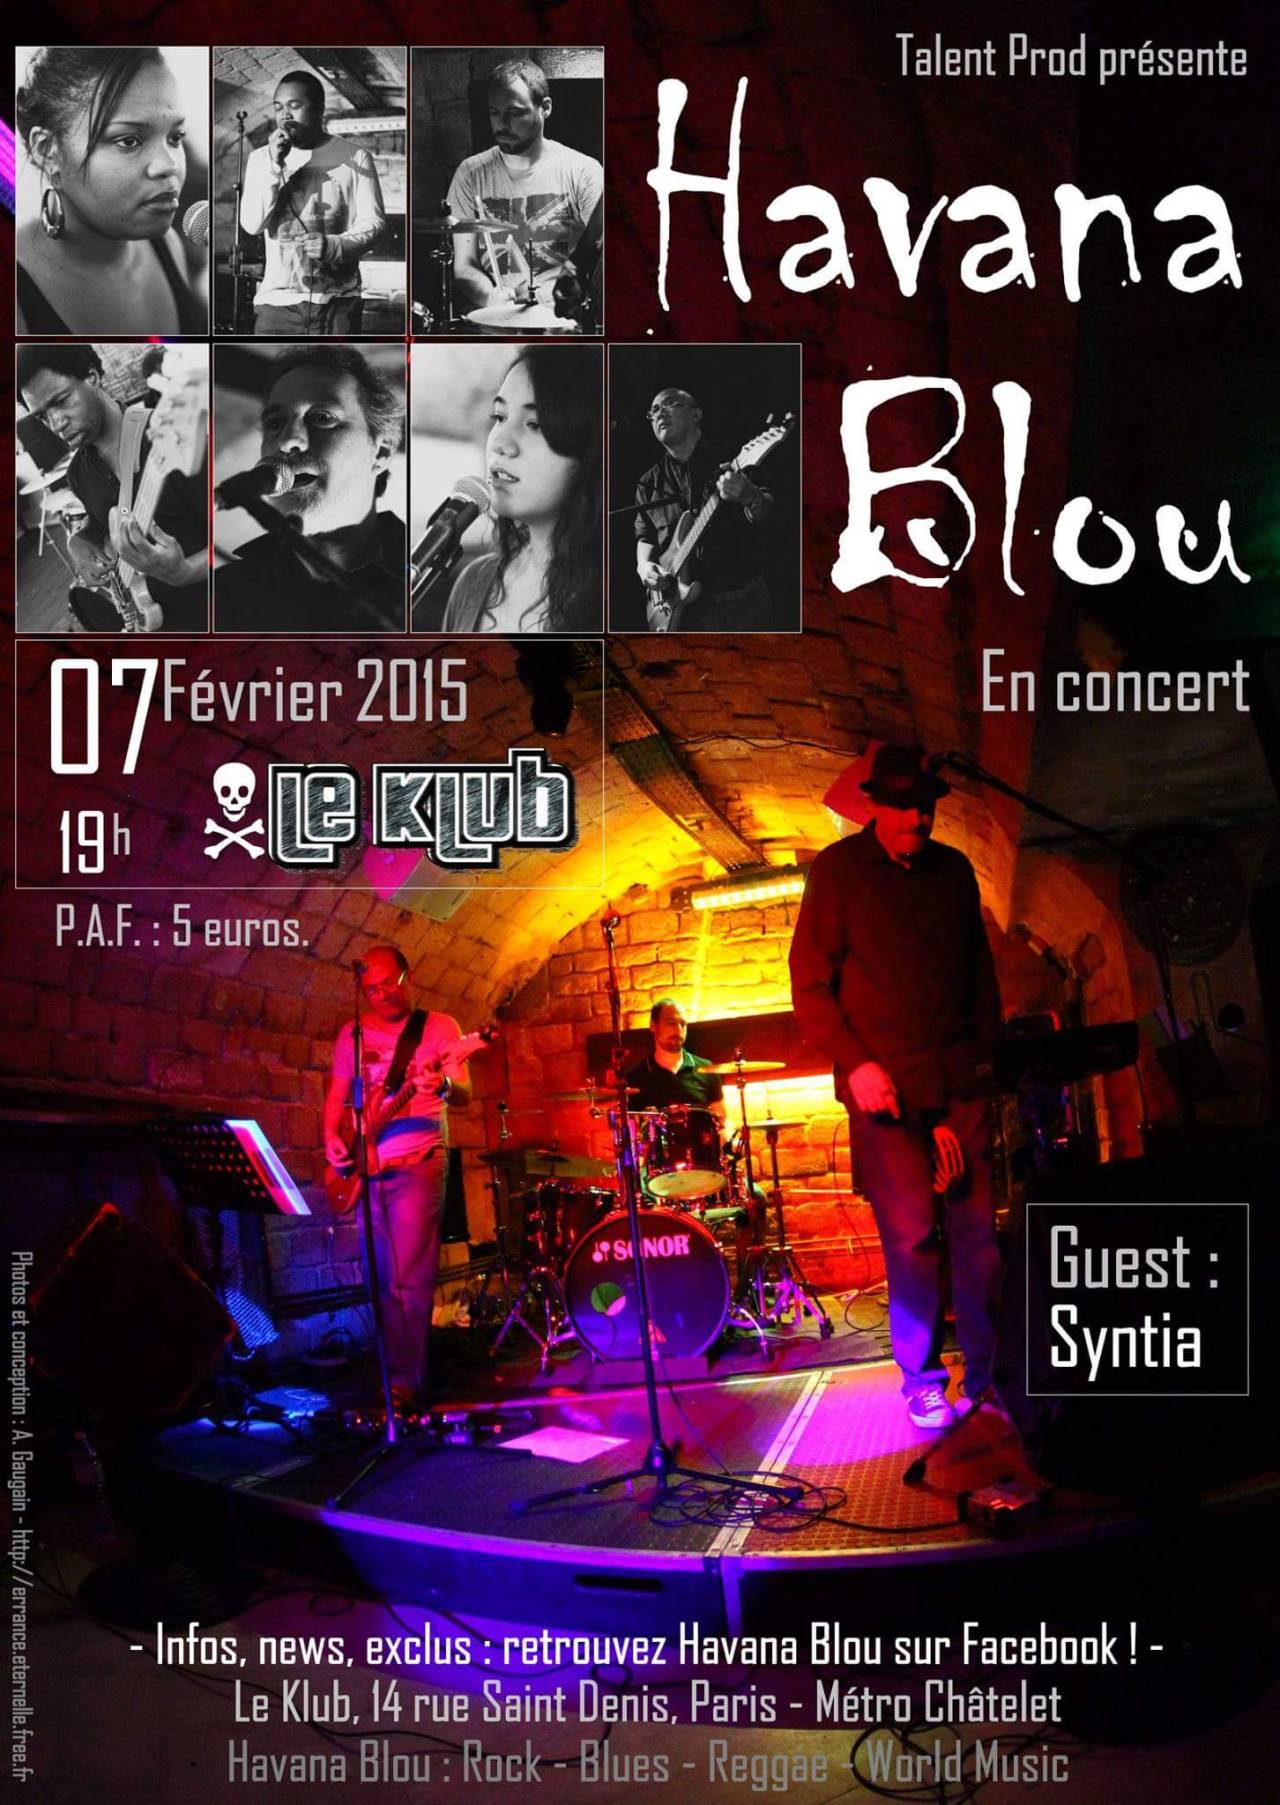 Jour J pour le concert Havana Blou au Klub de Paris à 19h 